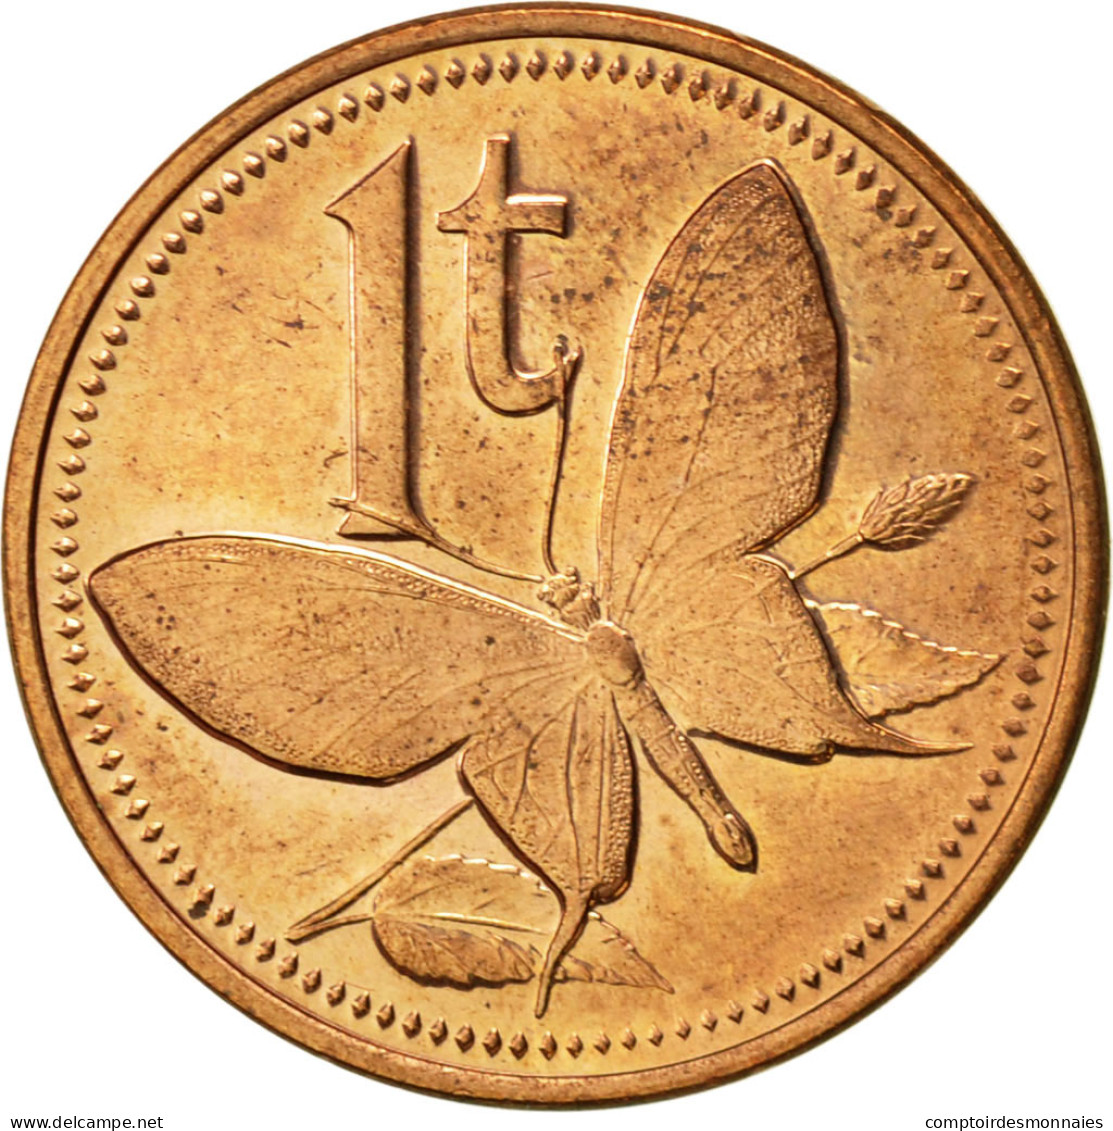 Monnaie, Papua New Guinea, Toea, 1995, SUP, Bronze, KM:1 - Papouasie-Nouvelle-Guinée